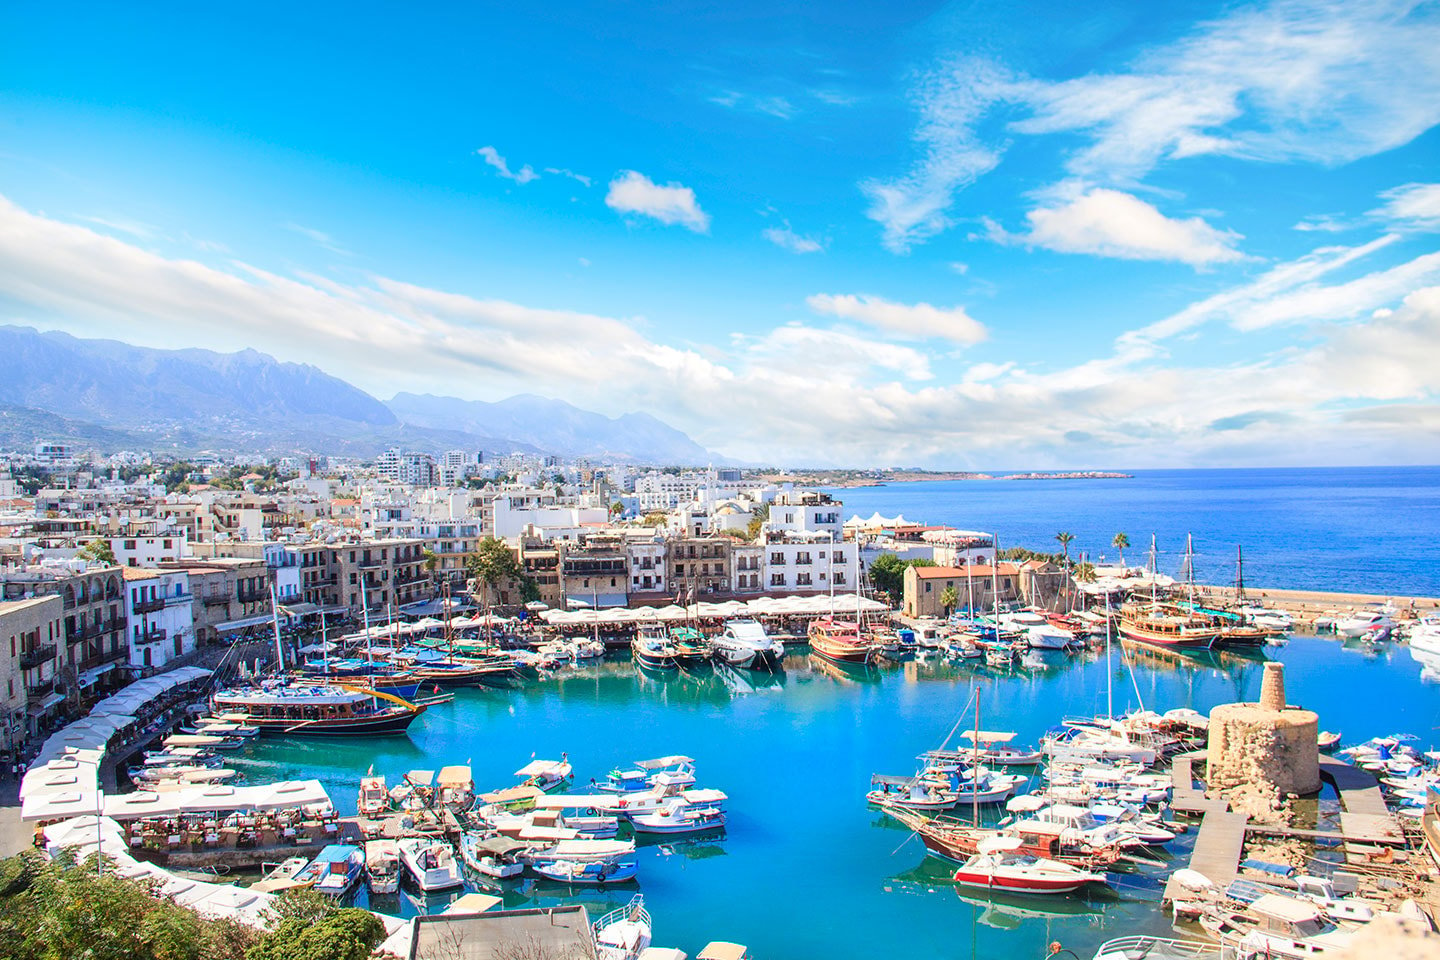 Res till Cypern med Let's deal travel inkl. hotell och flyg (1 av 3)